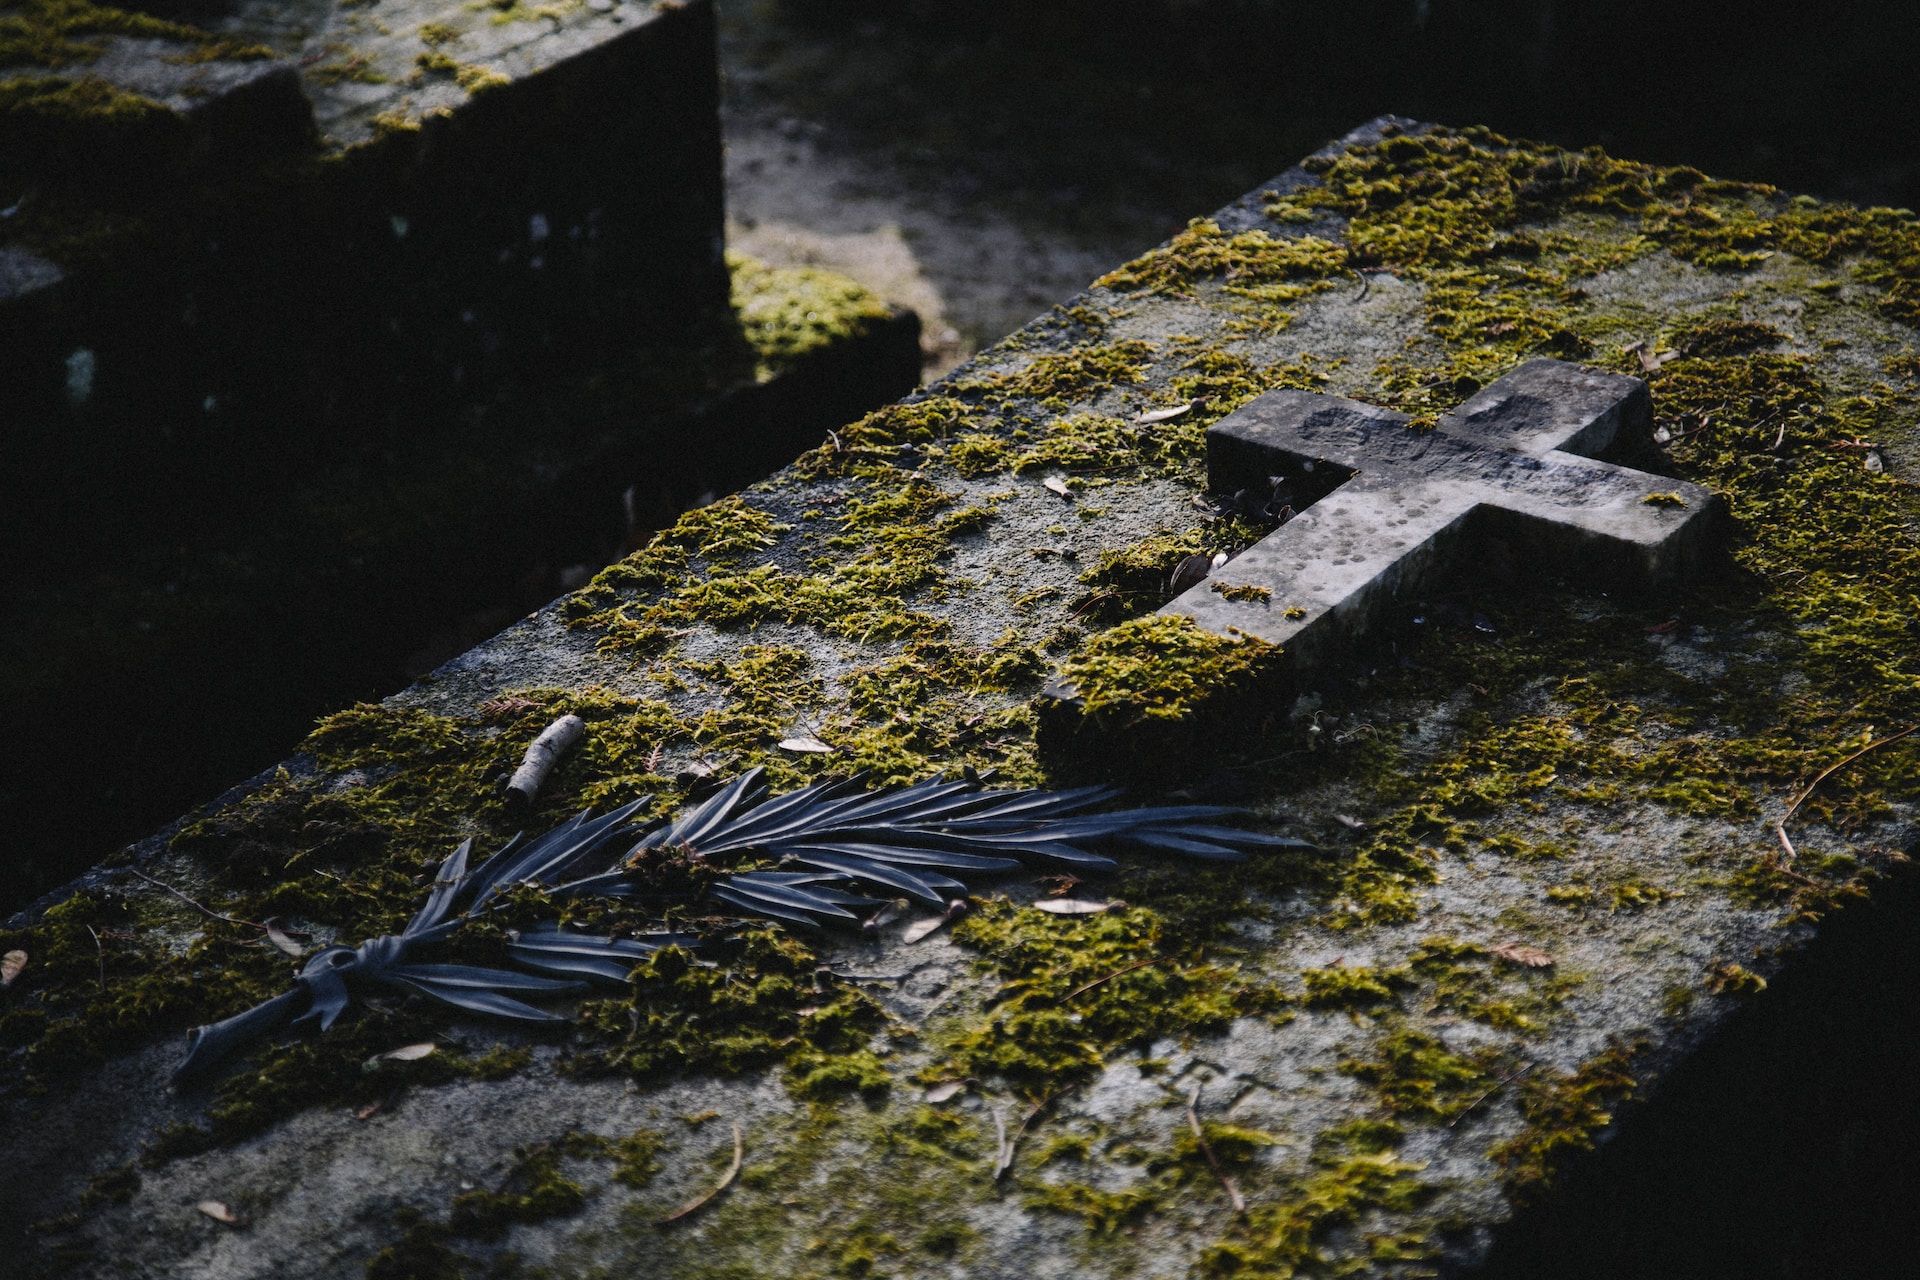 Une tombe moussue décorée d'une croix et d'une branche de palm - Photo de Kenny Orr sur https://unsplash.com/fr/photos/1AVTo_bdHWs